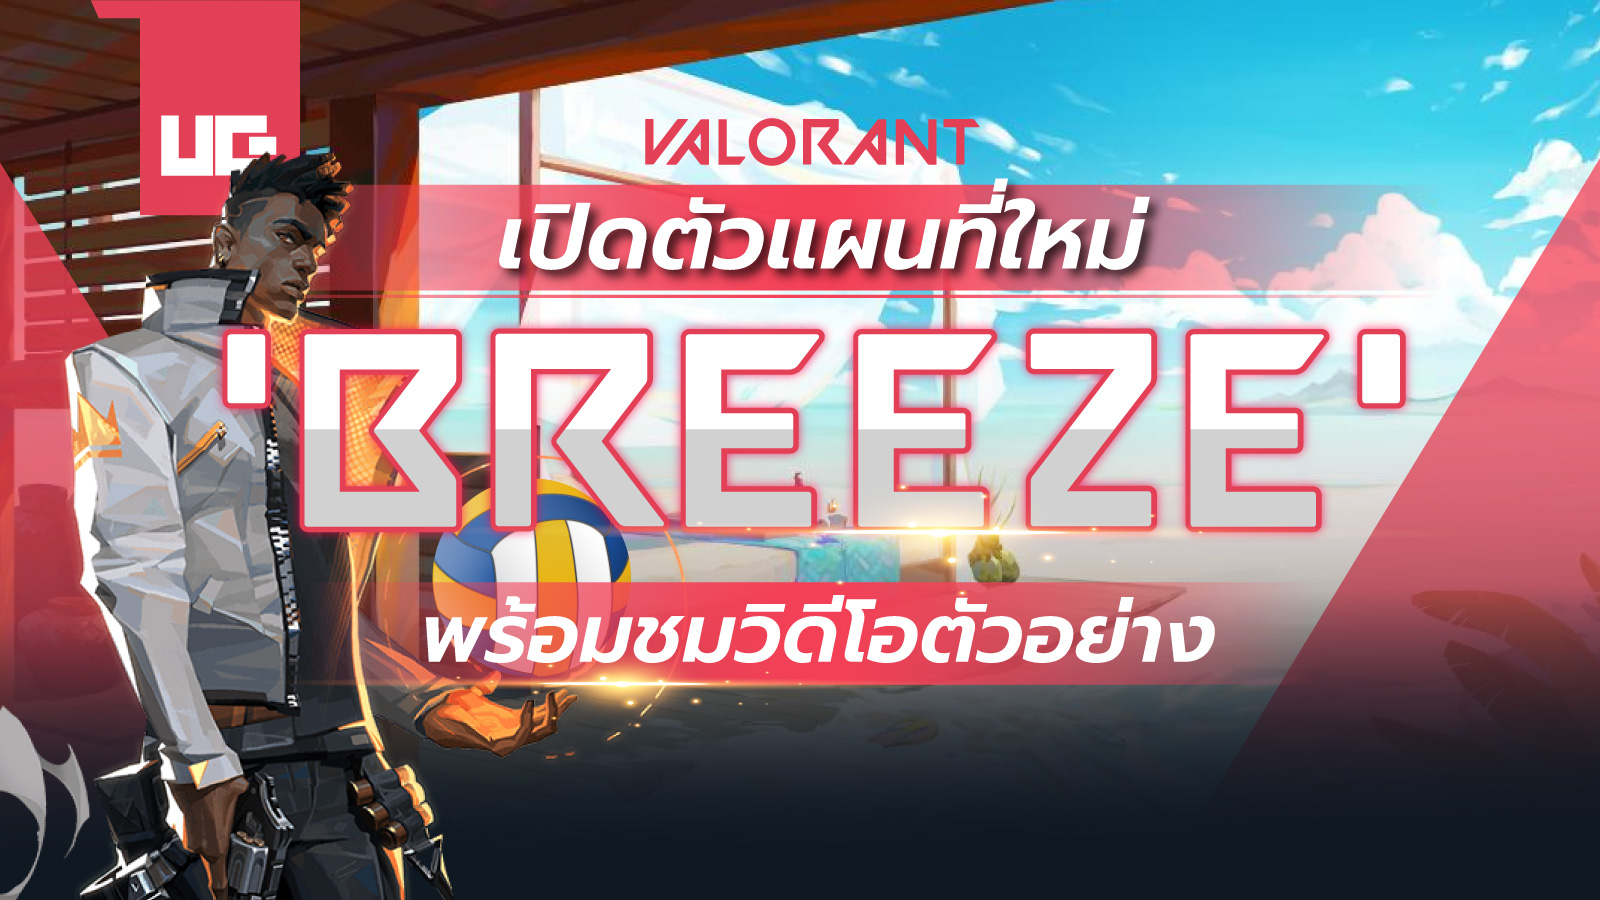 เปิดตัวแผนที่ใหม่ ‘Breeze’ เกม VALORANT พร้อมชมวิดีโอตัวอย่าง